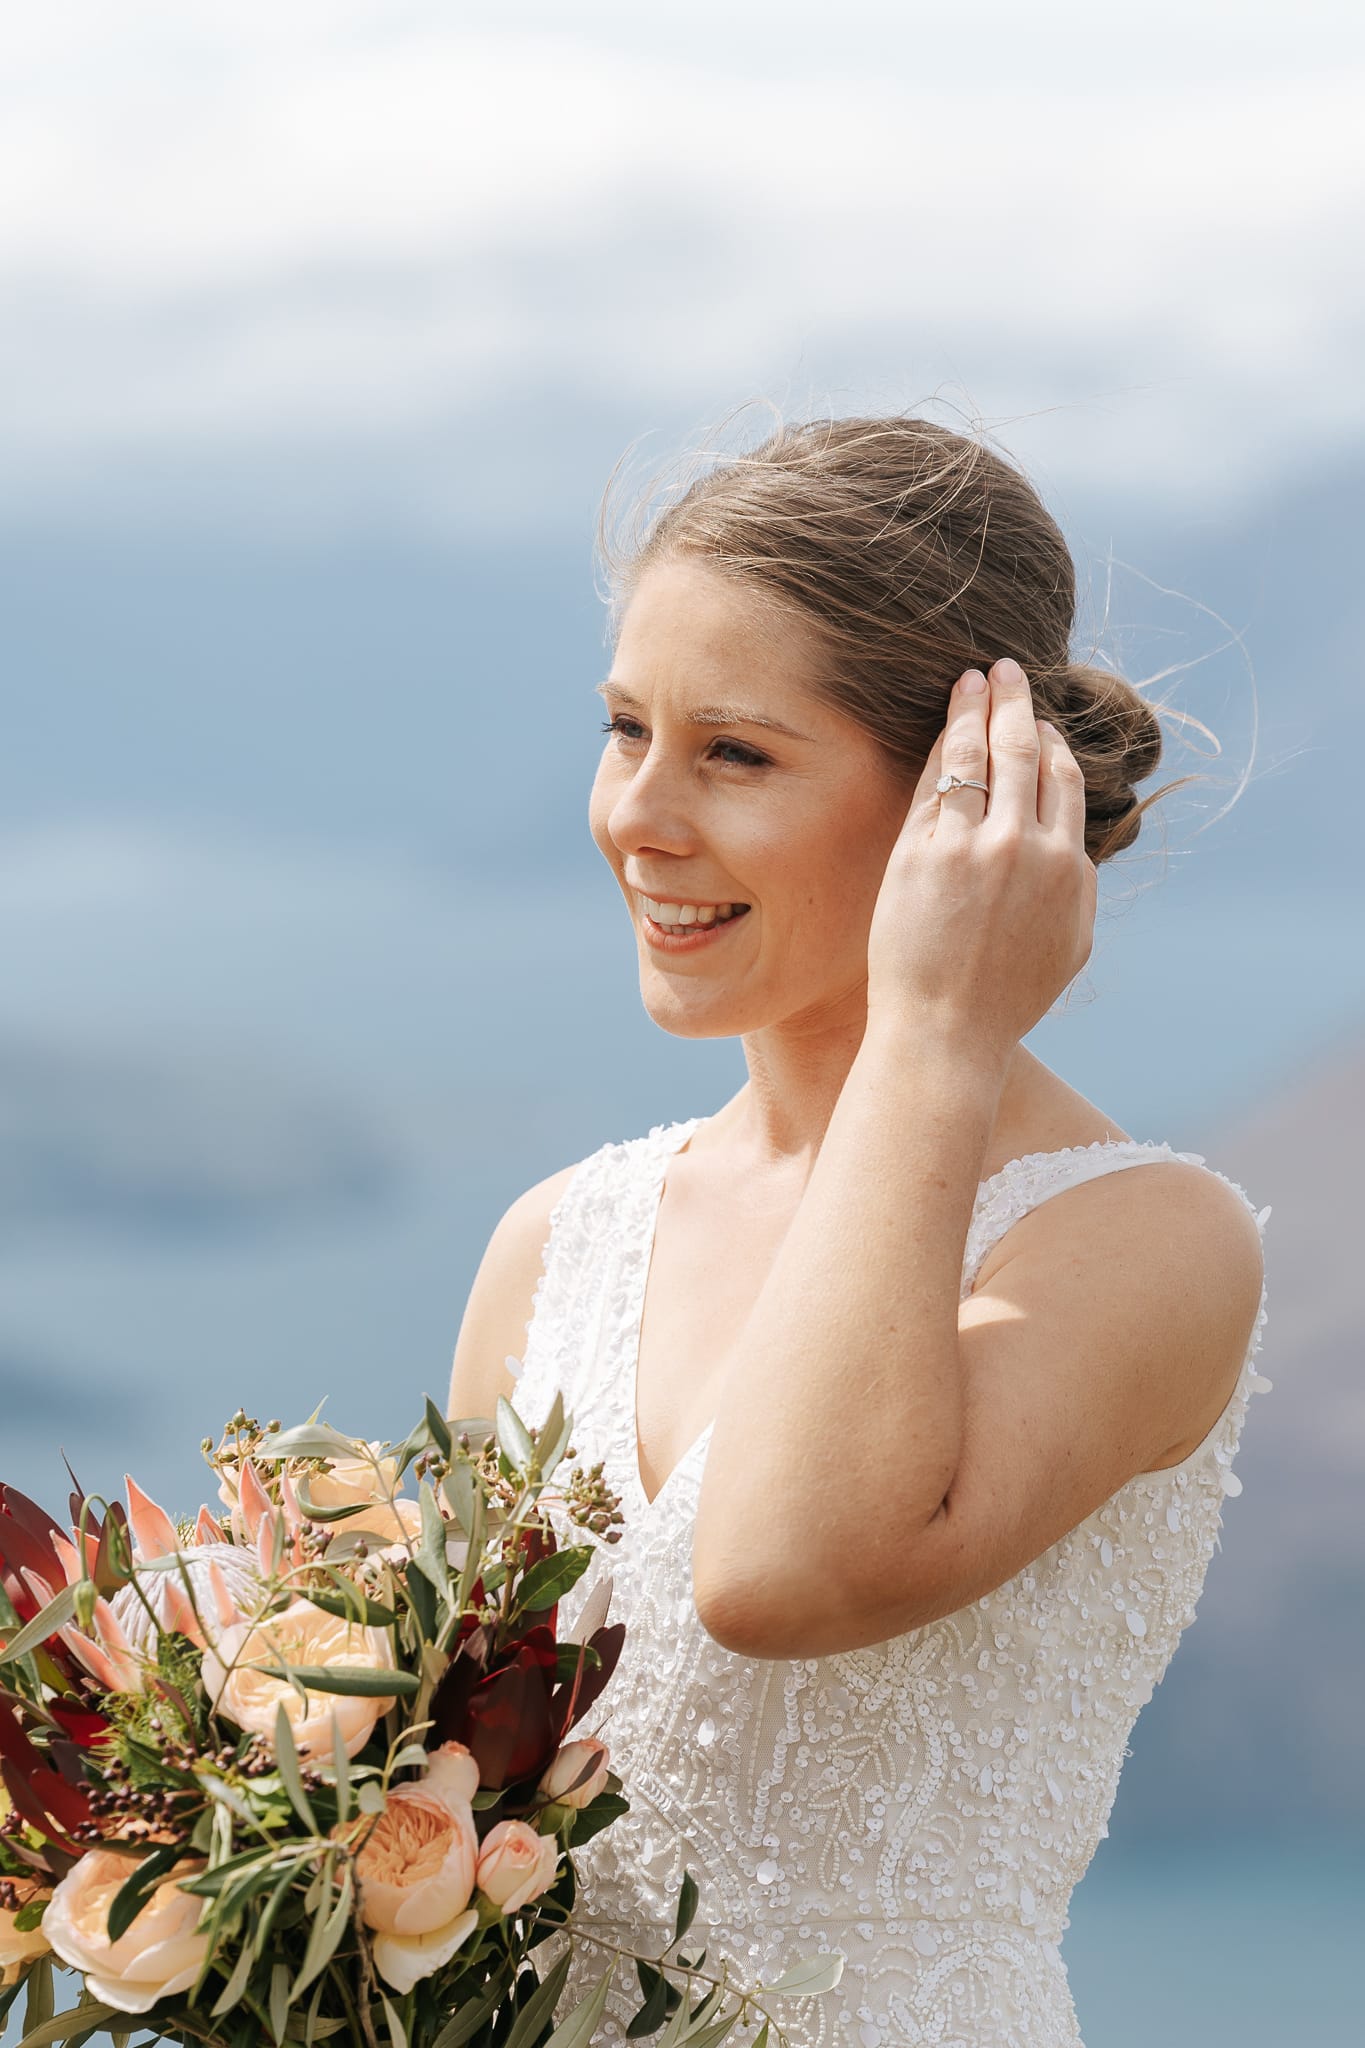 Luxury Elopement wedding in Queenstown New Zealand with helicopter wedding on Coromandel Peak